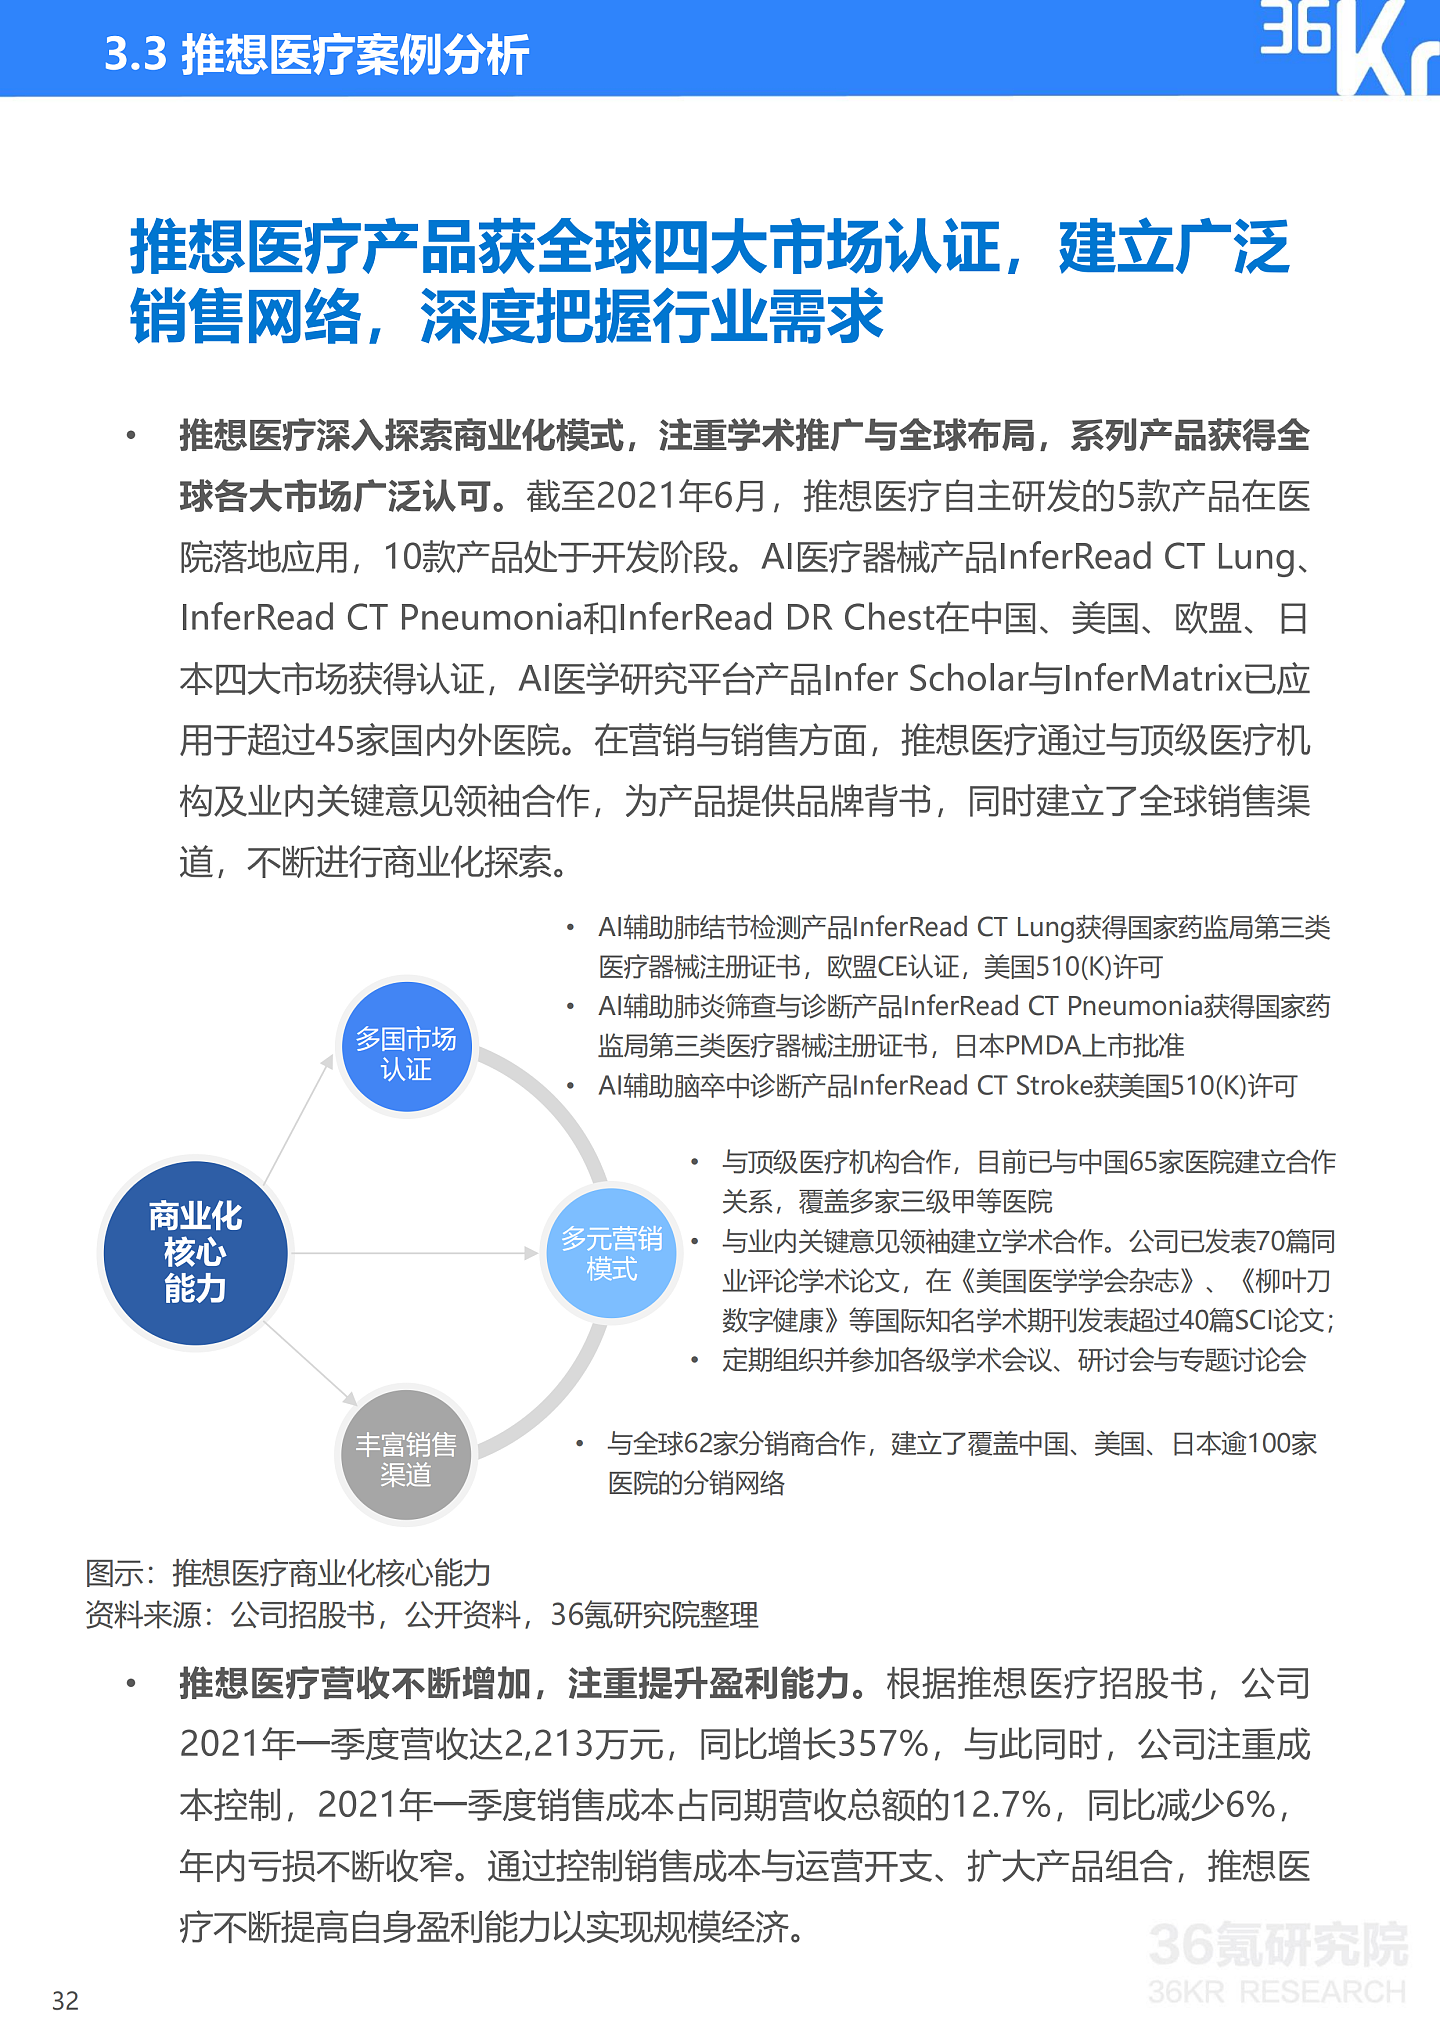 36氪研究院 | 2021年中国医疗AI行业研究报告 - 35